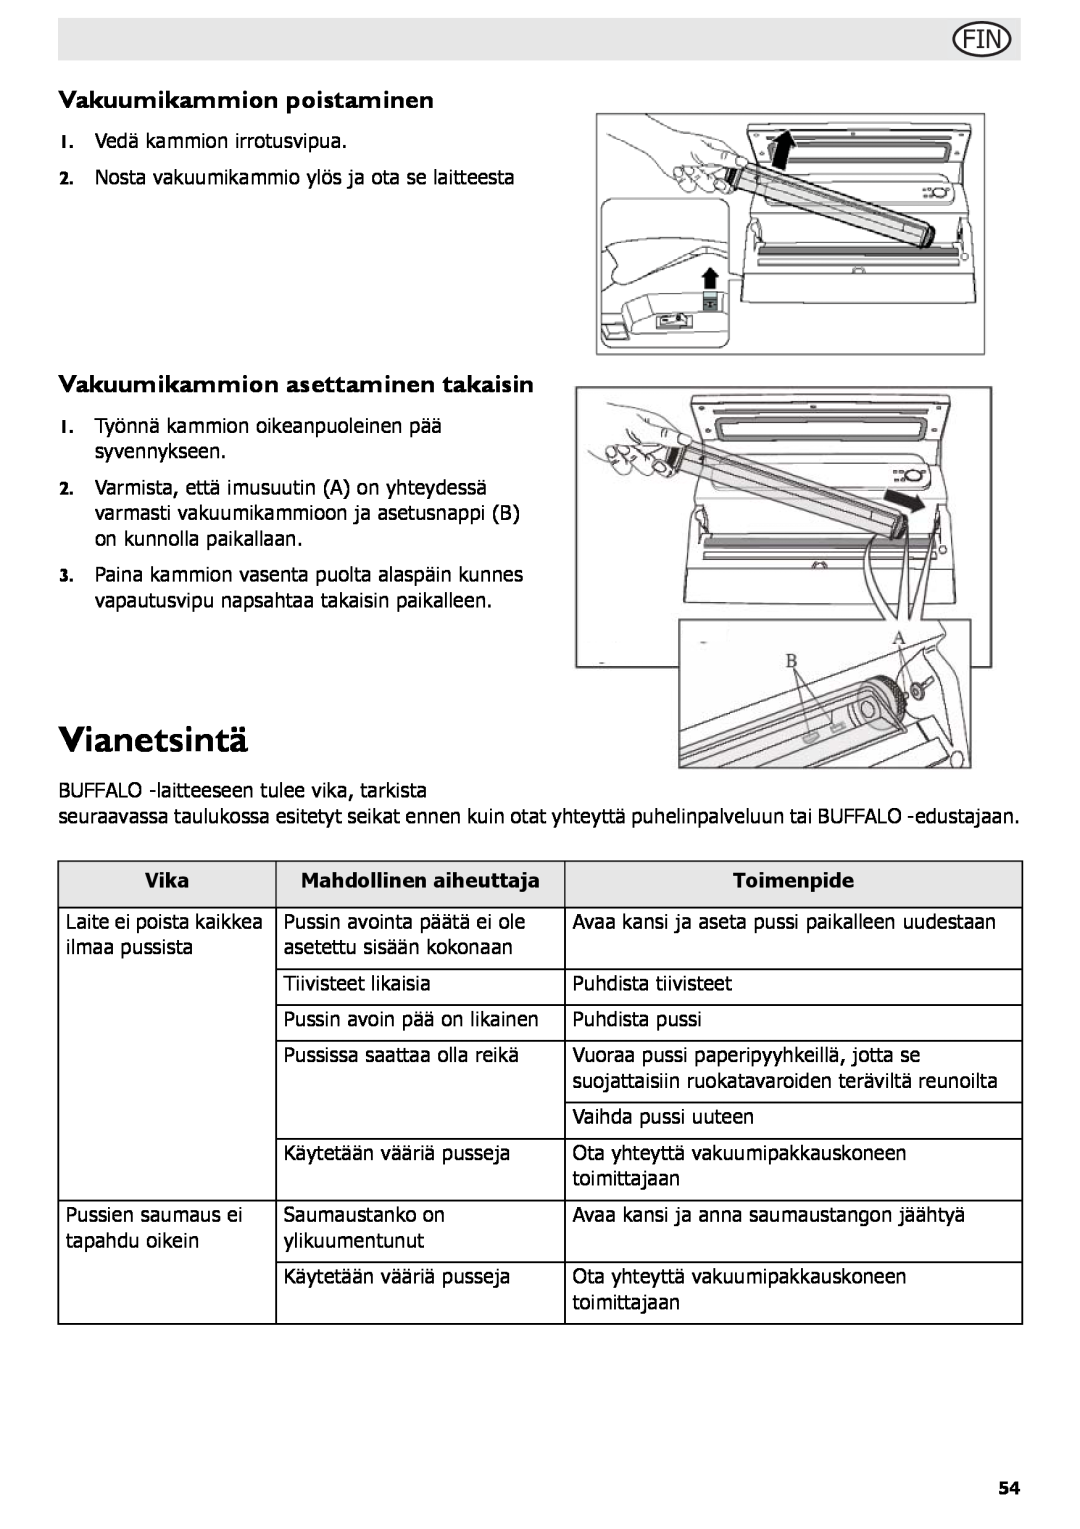 Buffalo Tools S097 instruction manual Vianetsintä, Vakuumikammion poistaminen, Vakuumikammion asettaminen takaisin 